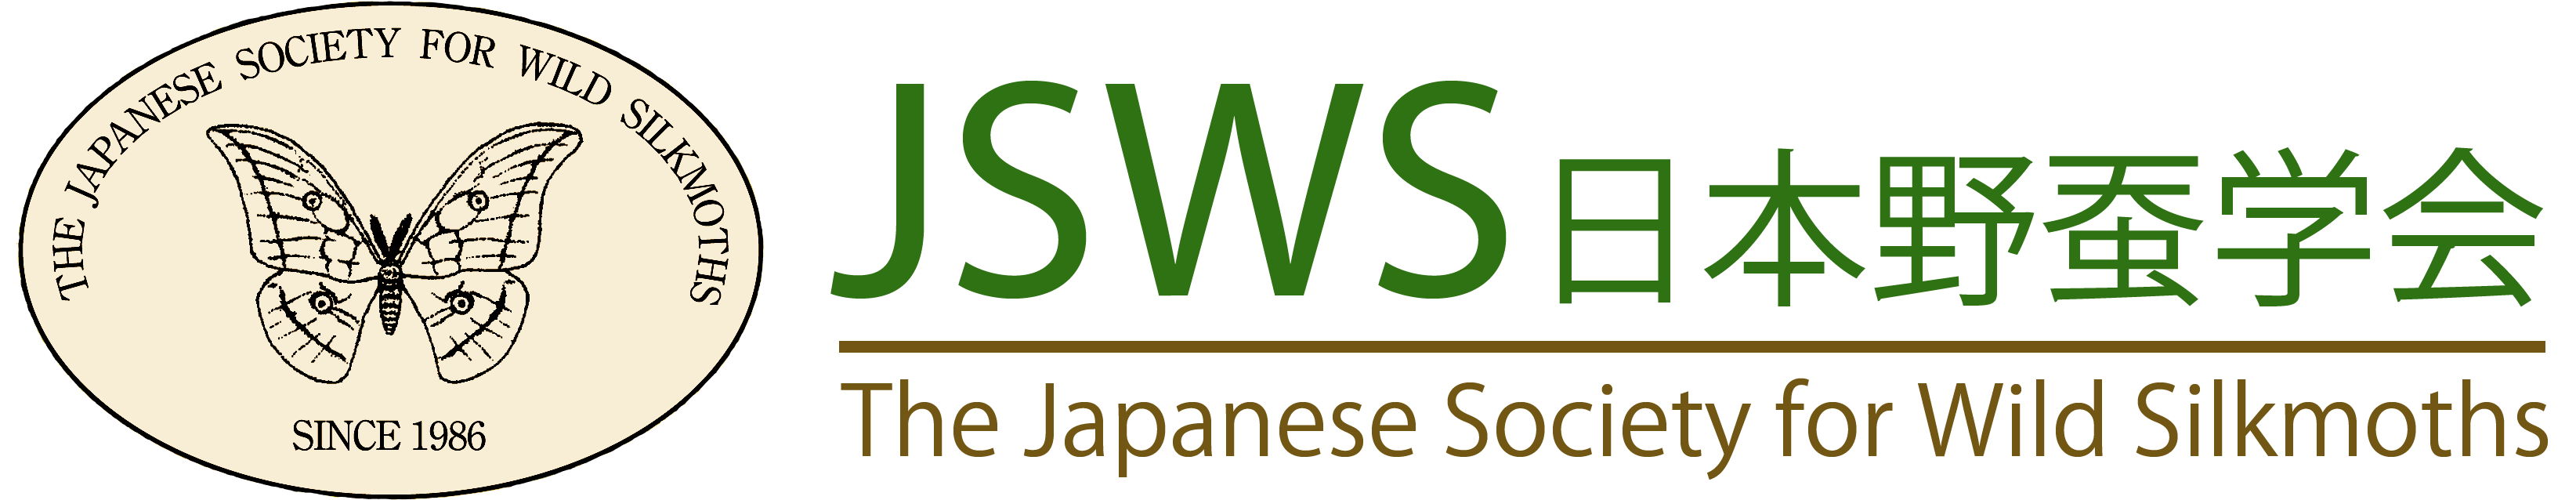 日本野蚕学会